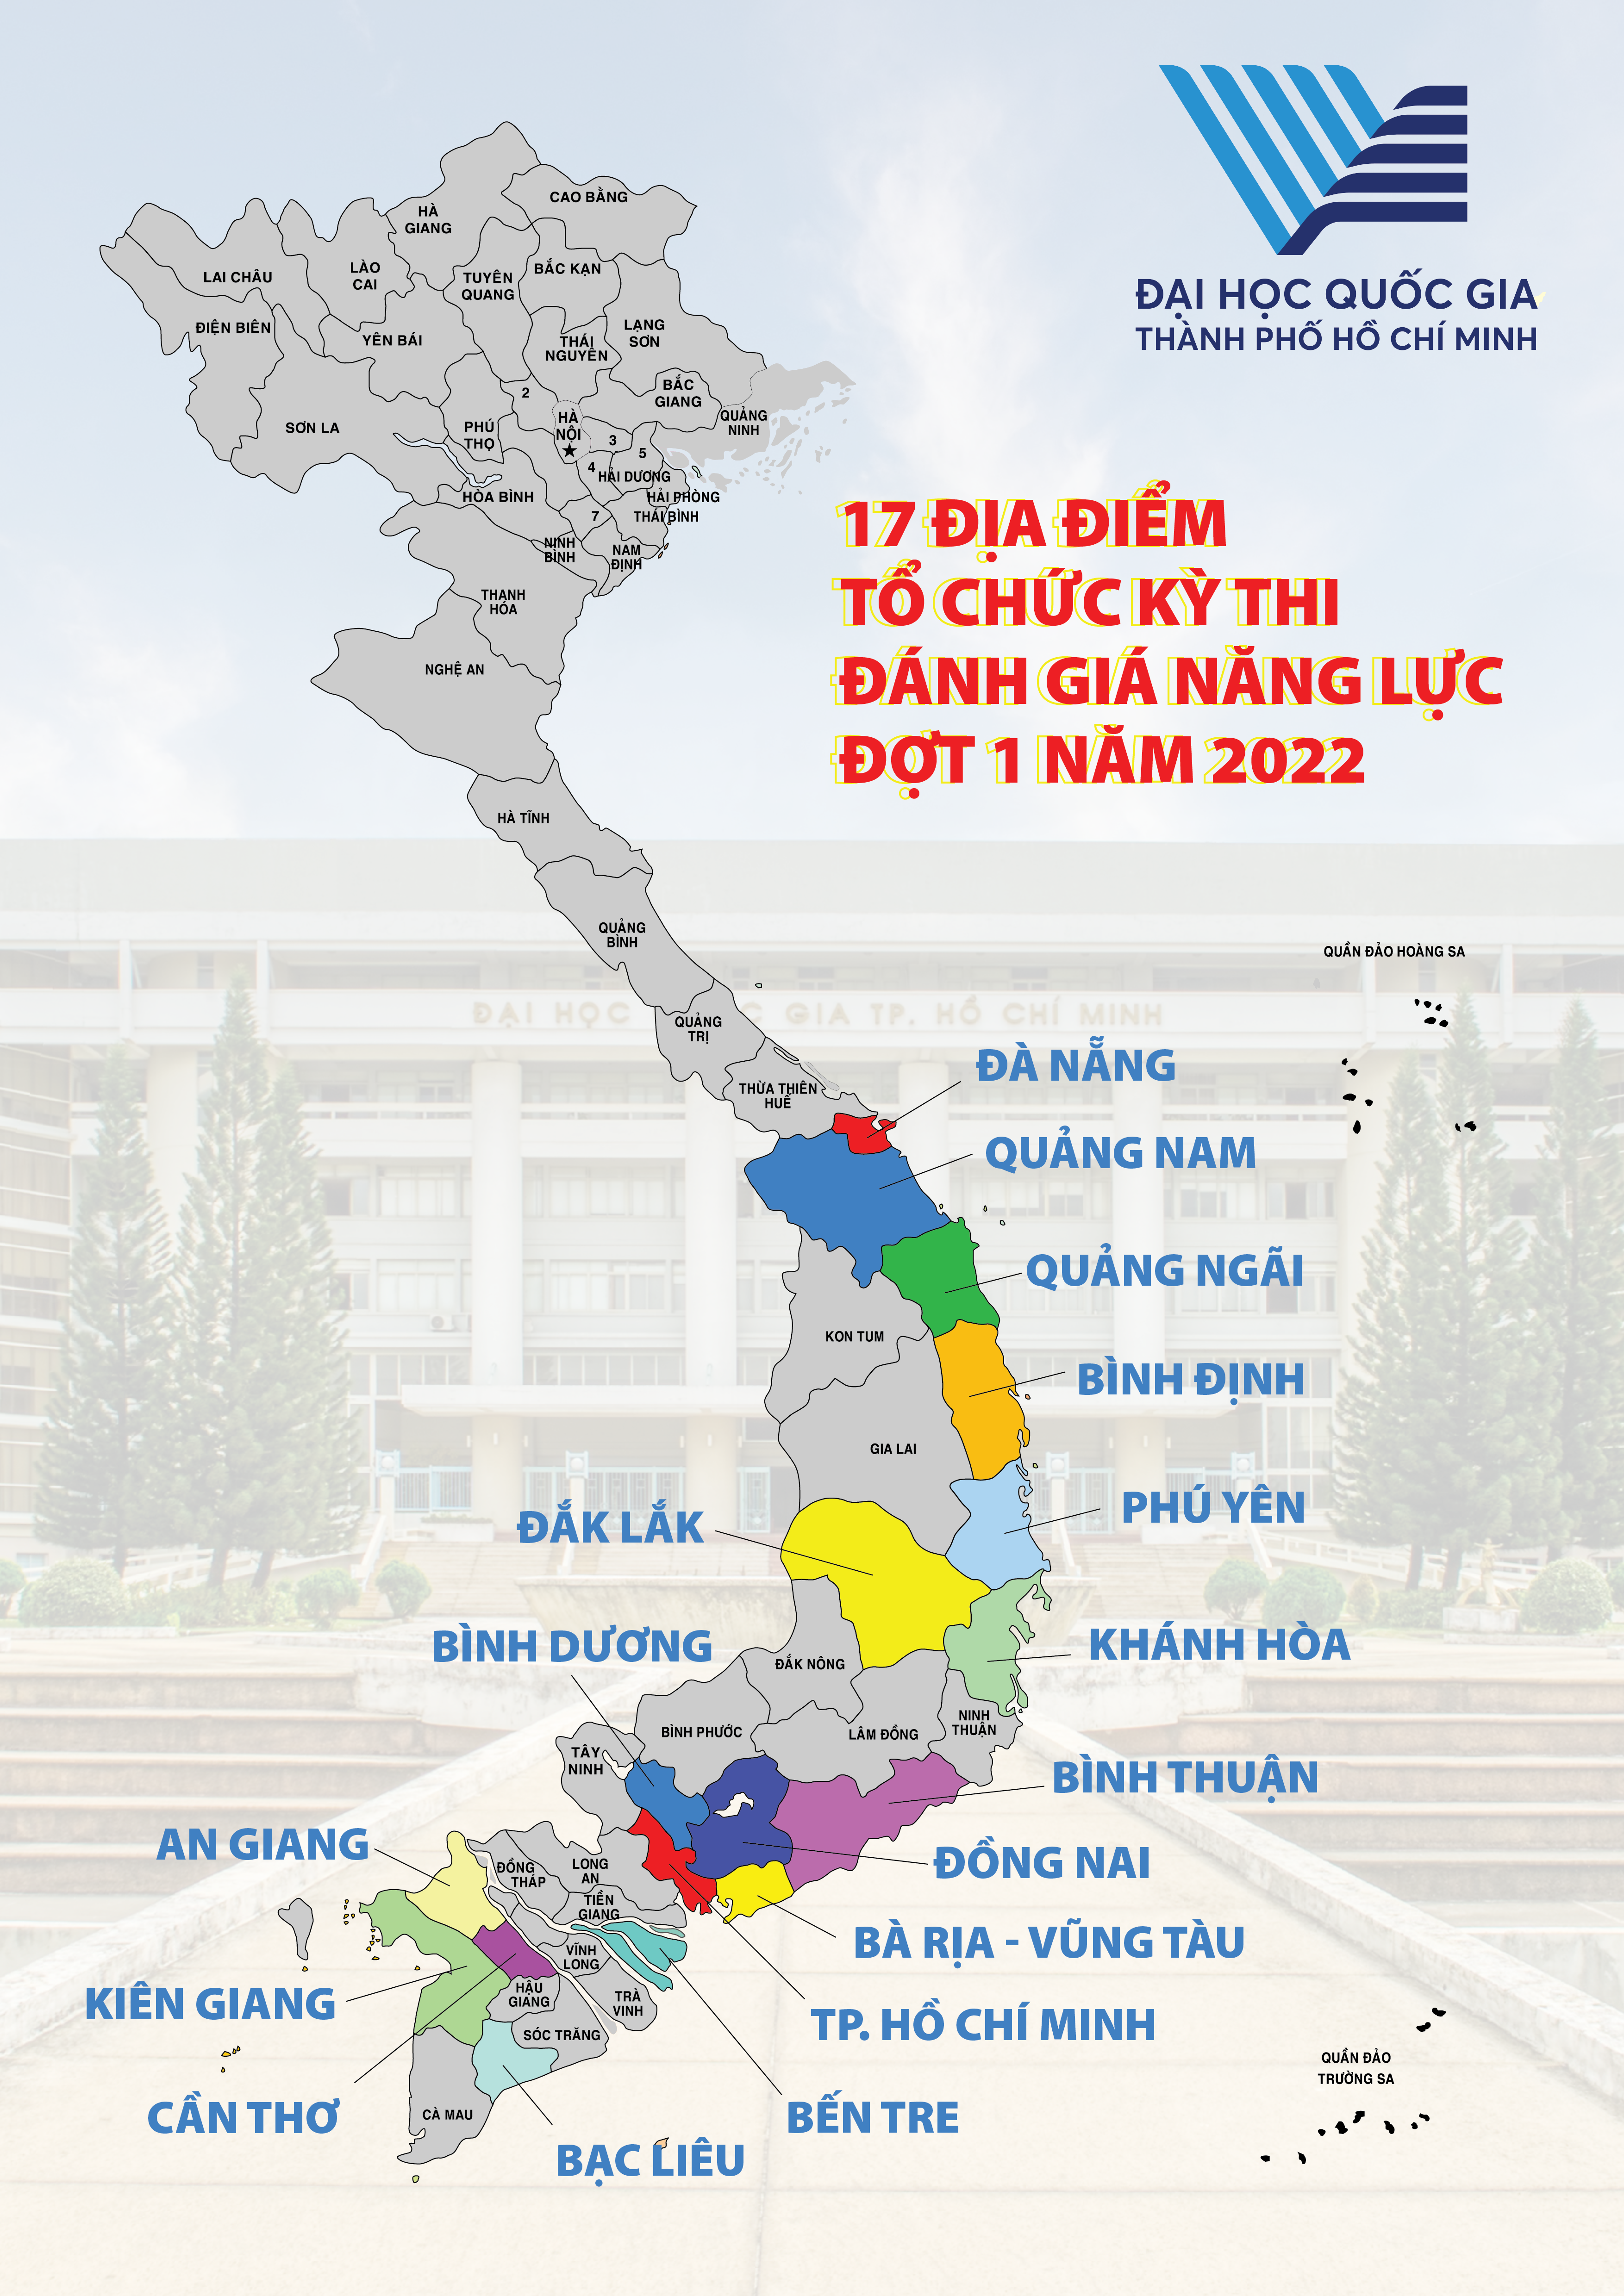 Đại học Quốc gia TPHCM tổ chức thi đánh giá năng lực tại 17 tỉnh/thành phố. Ảnh: VNUHCM